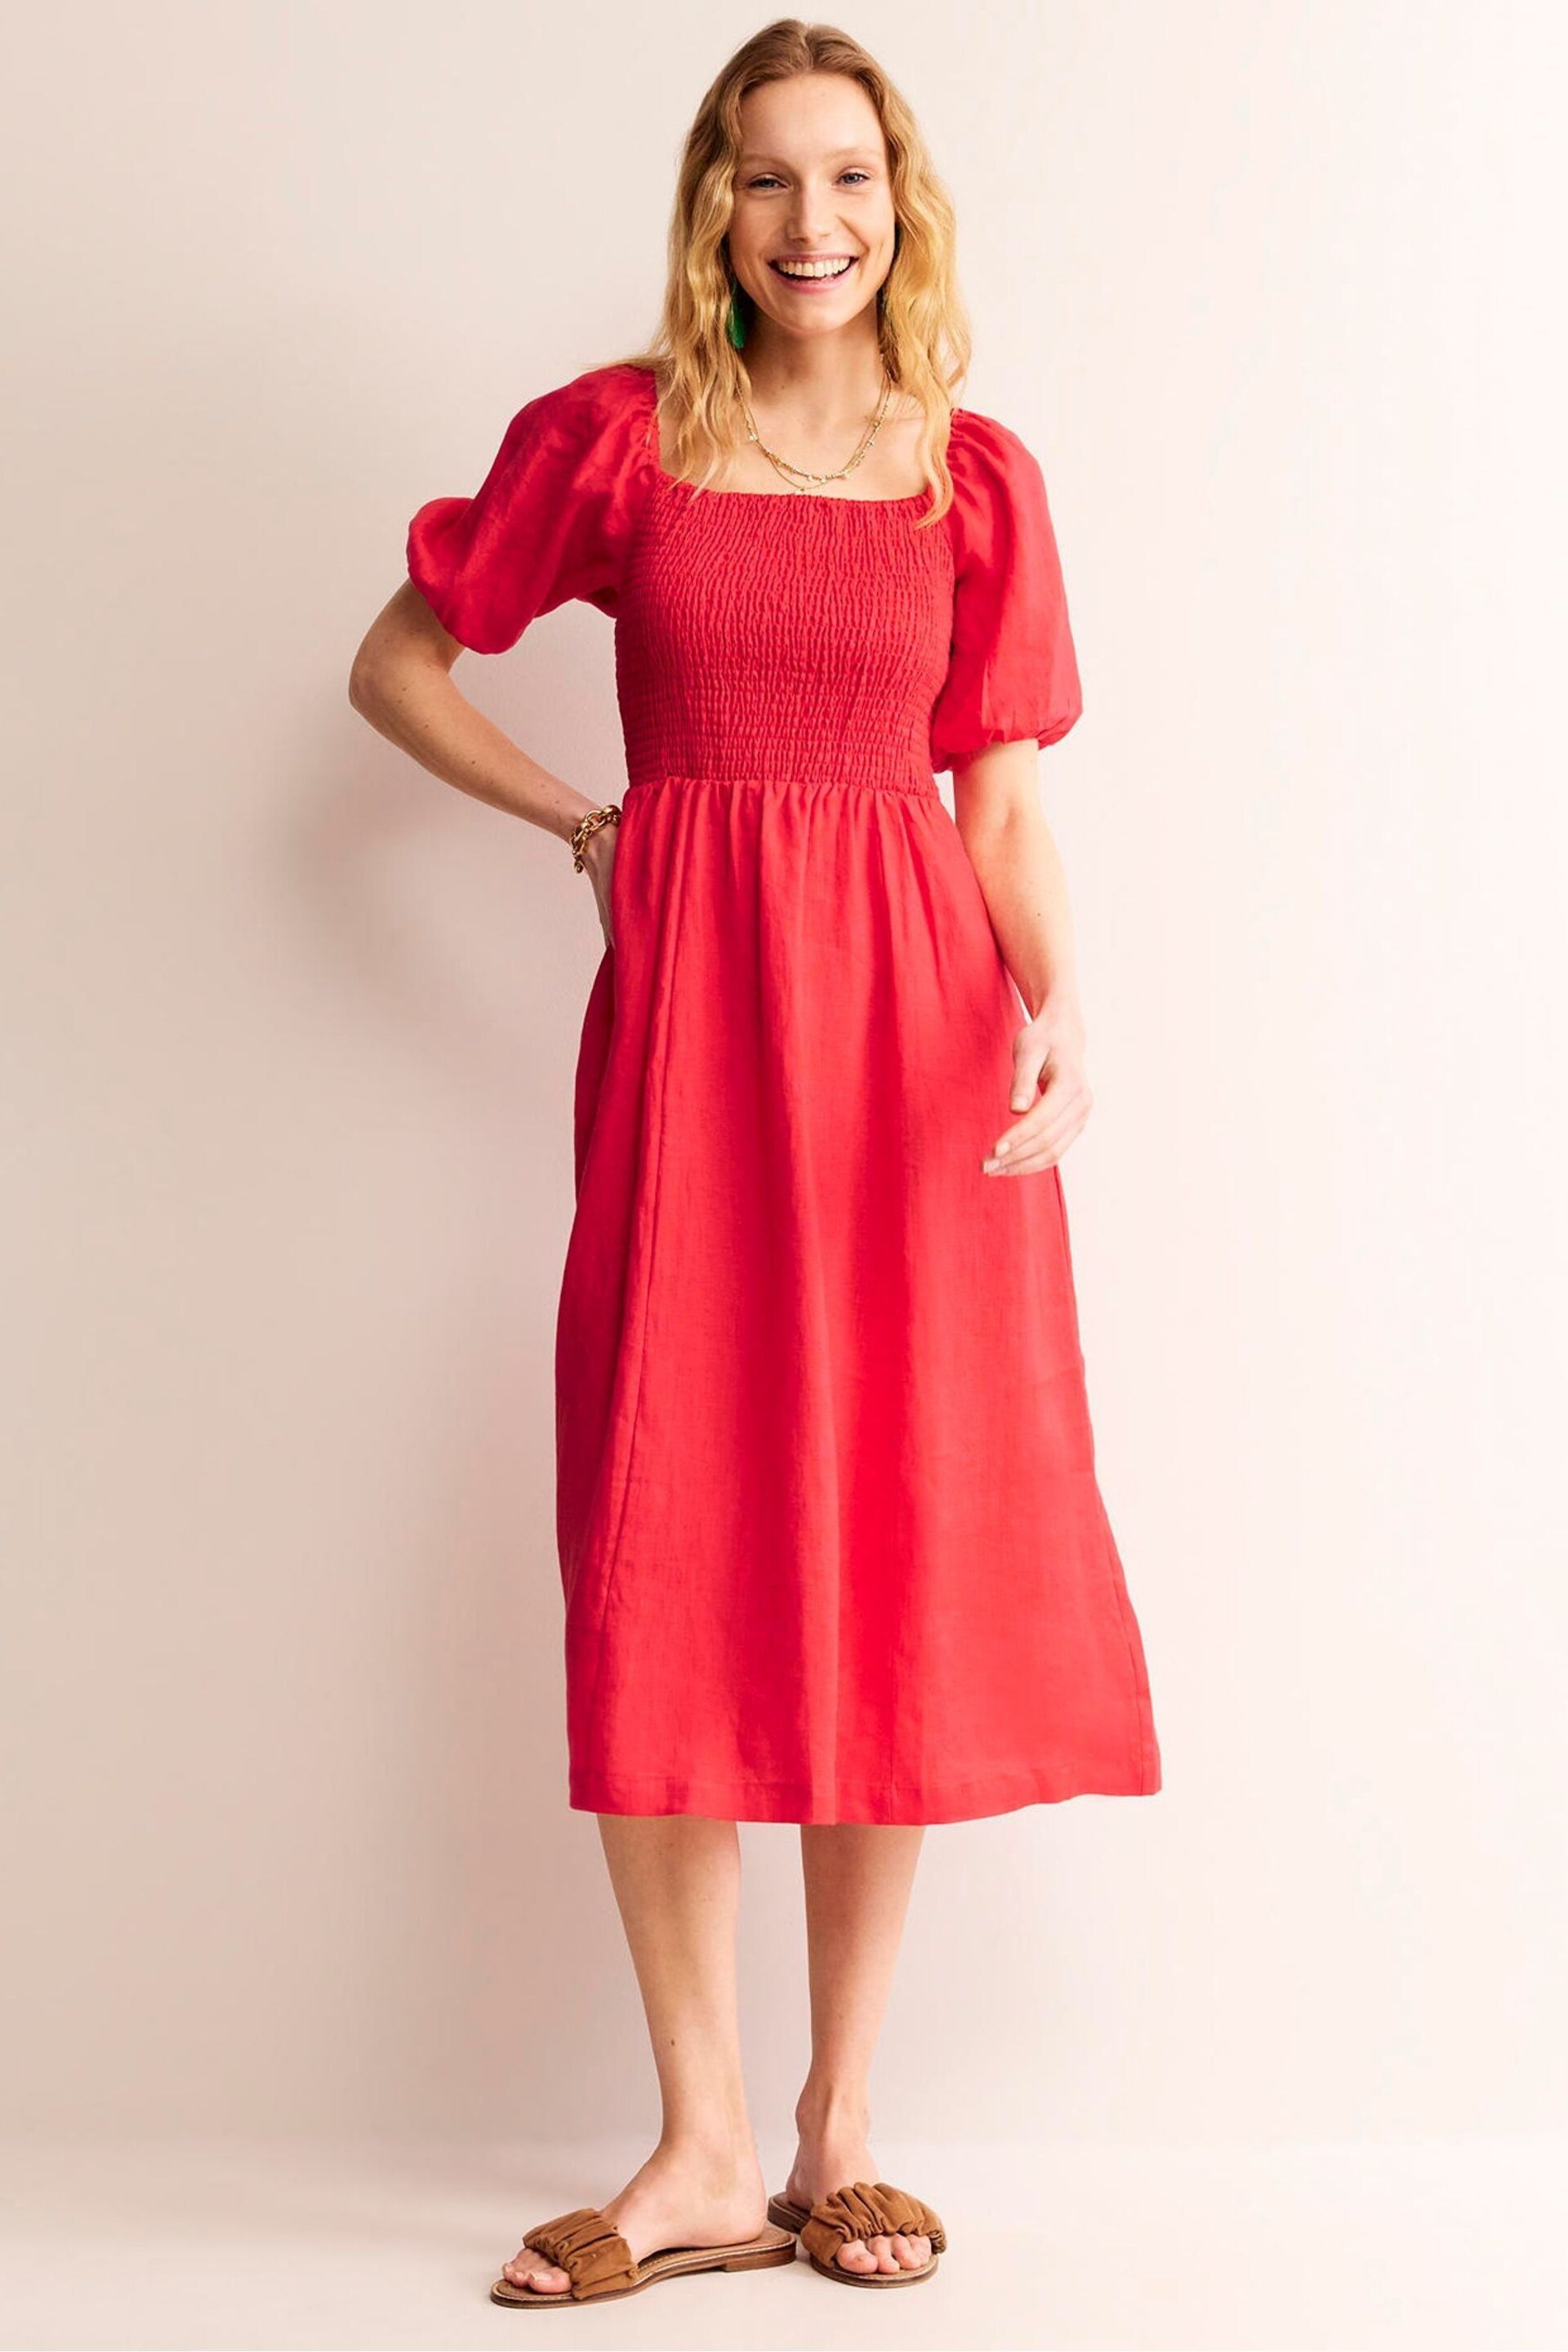 Boden Red Sky Smocked Linen Midi Dress - Image 3 of 6